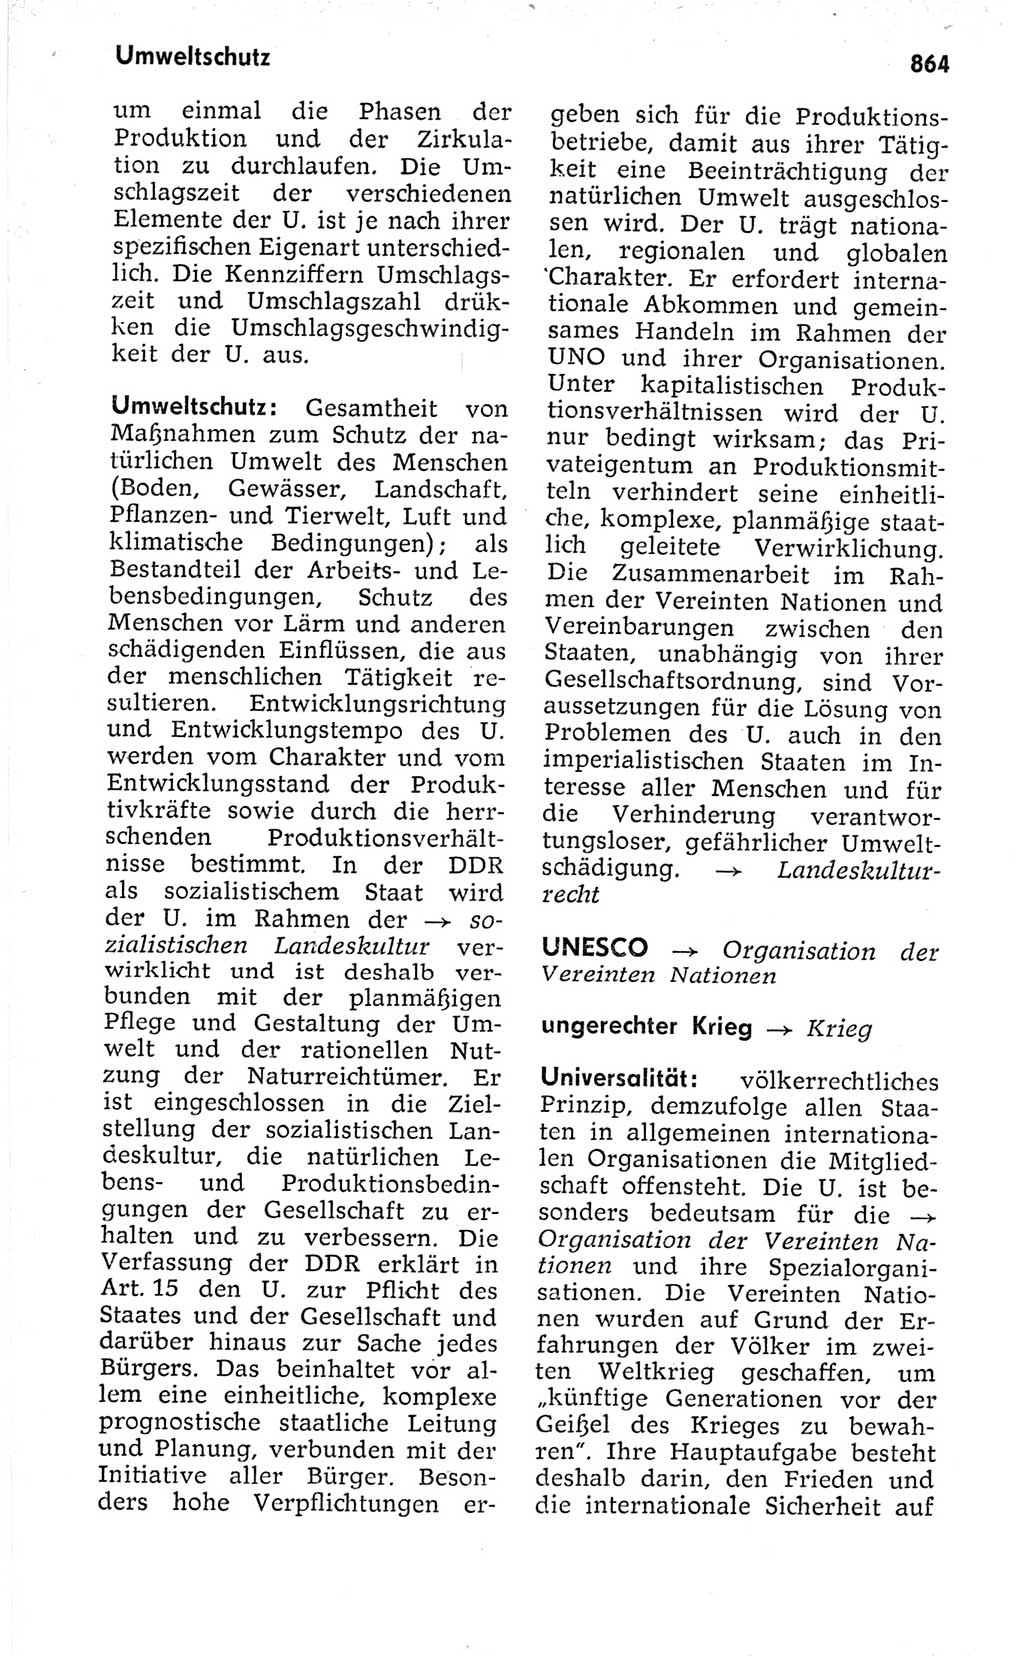 Kleines politisches Wörterbuch [Deutsche Demokratische Republik (DDR)] 1973, Seite 864 (Kl. pol. Wb. DDR 1973, S. 864)